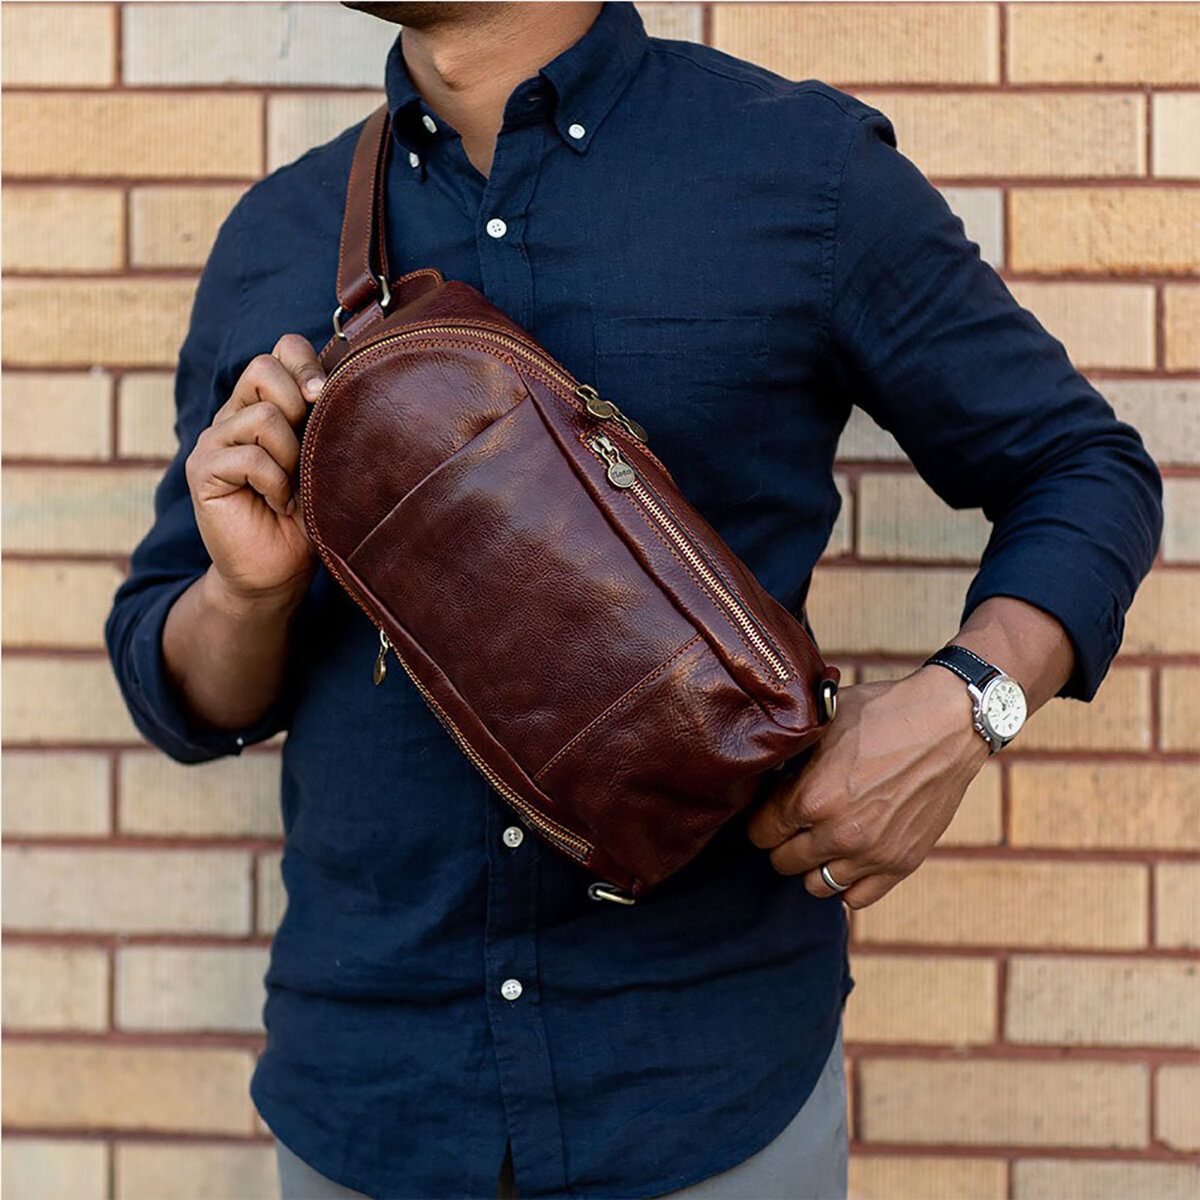 

Men PU Leather Anti-Theft Vintage Casual Shoulder Bag Crossbody Bag Chest Bag Sling Bag Hippie Bag